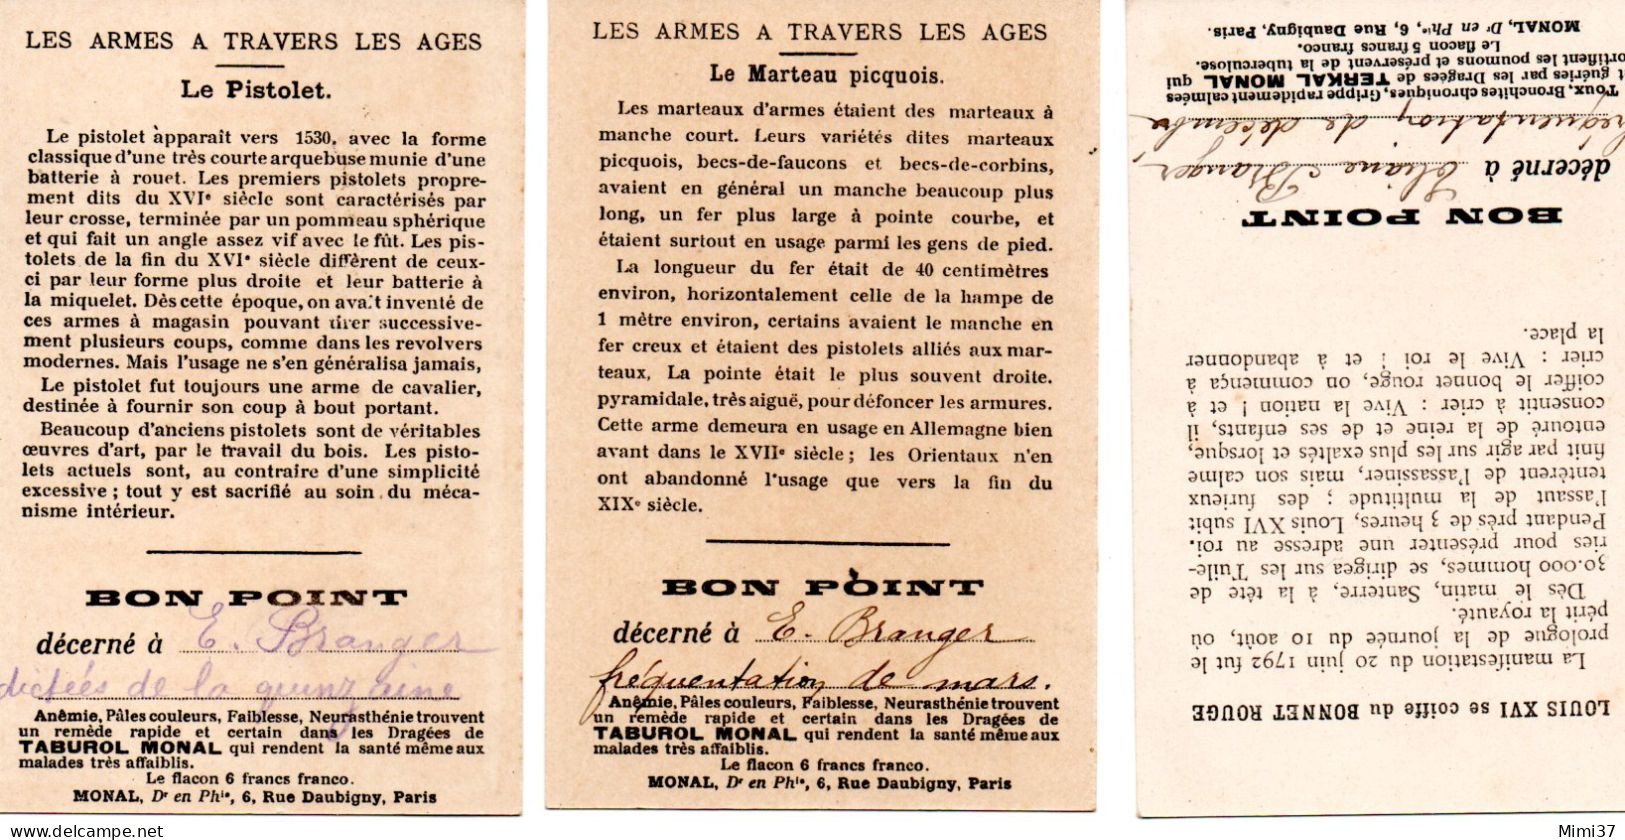 LOT DE TROIS BONS POINTS ANNEES 1920-30 PUBLICITE PHARMACIE MONAL - Diplome Und Schulzeugnisse